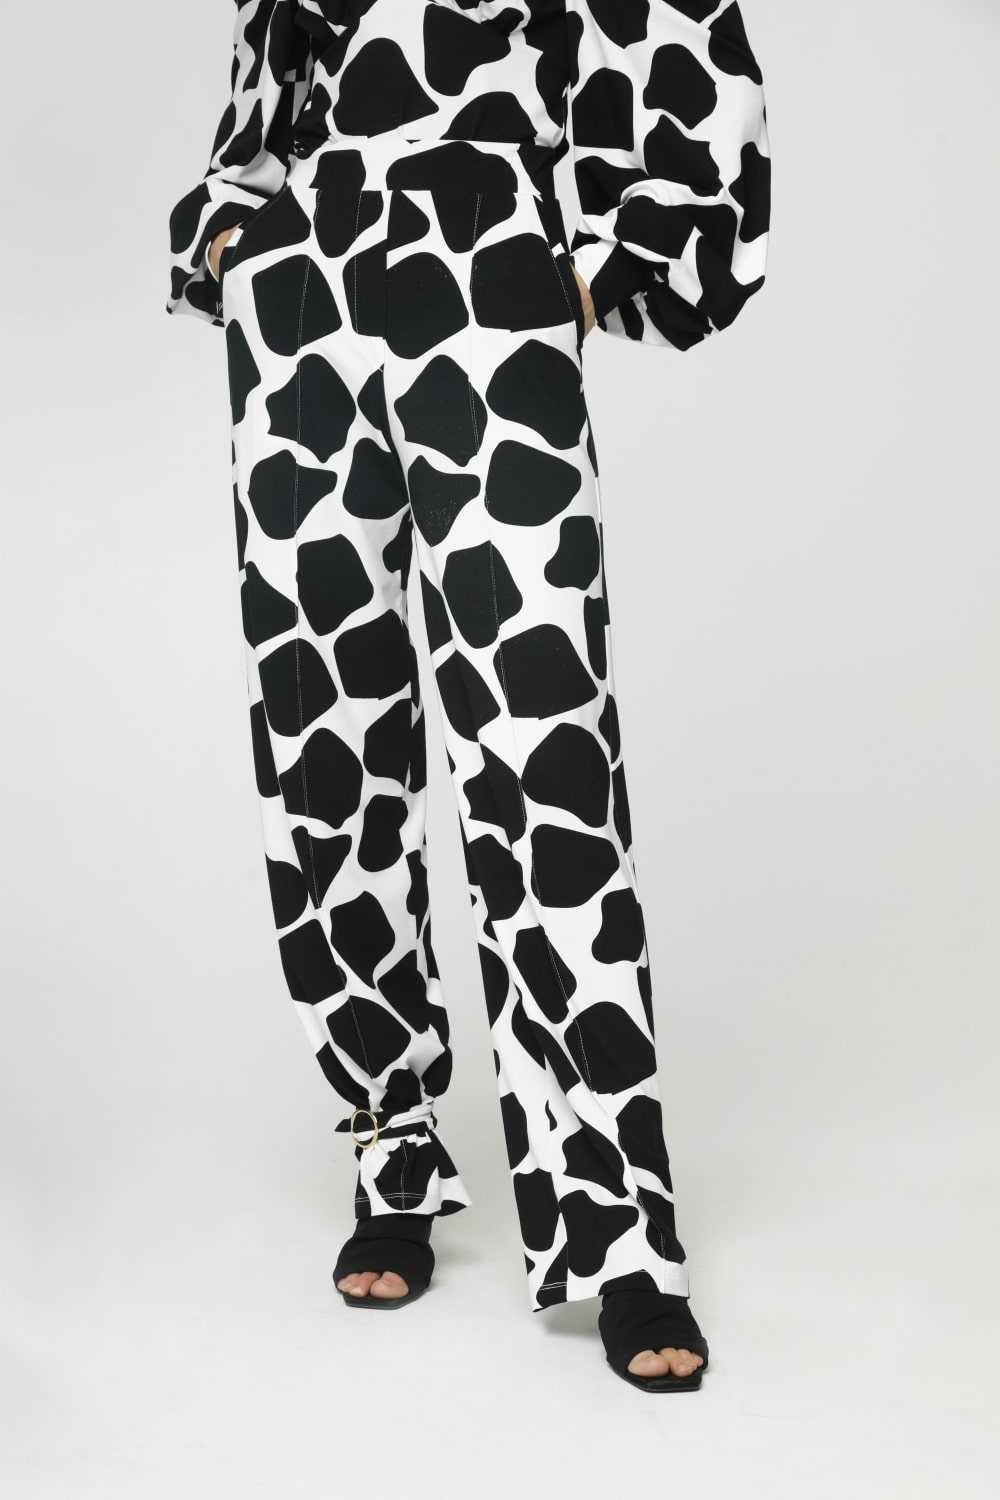 spodnie w krowę, spodnie krowi print, spodnie zapinane na kostce, czarno-białe spodnie